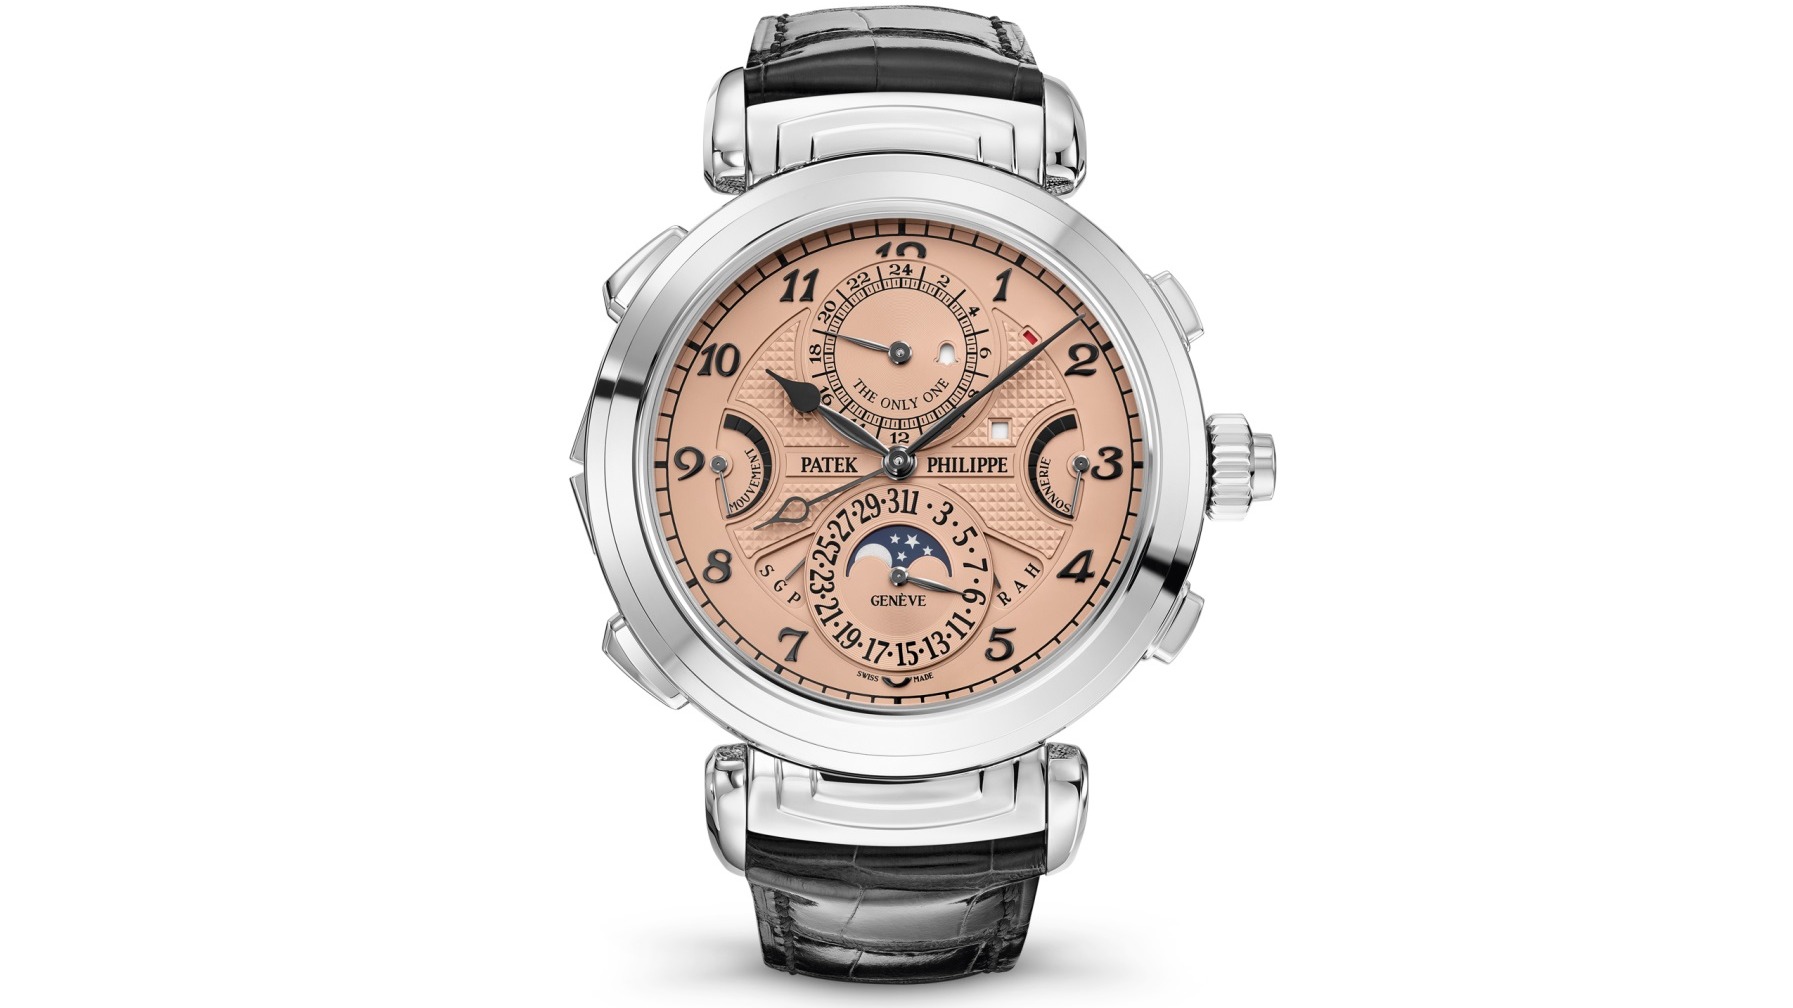 Para esta versión, el reloj tiene la inscripción “The Only One” sobre la esfera auxiliar a la altura de las 12 horas.